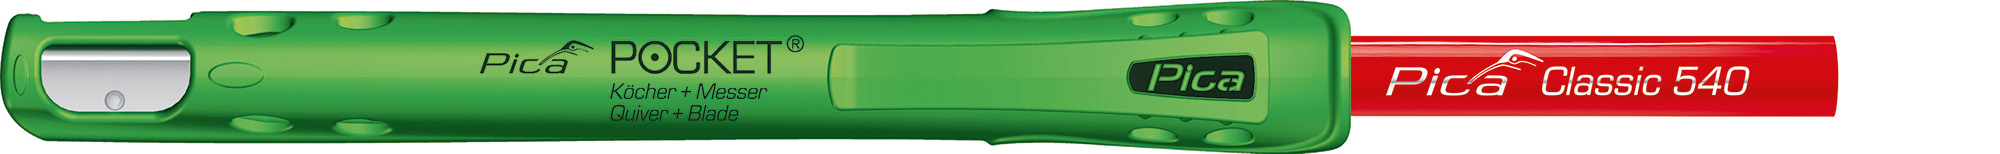 Pica POCKET Köcher & Messer in Einem Gratis Pica Classic Zimmermannsstift 240mm - 505/01